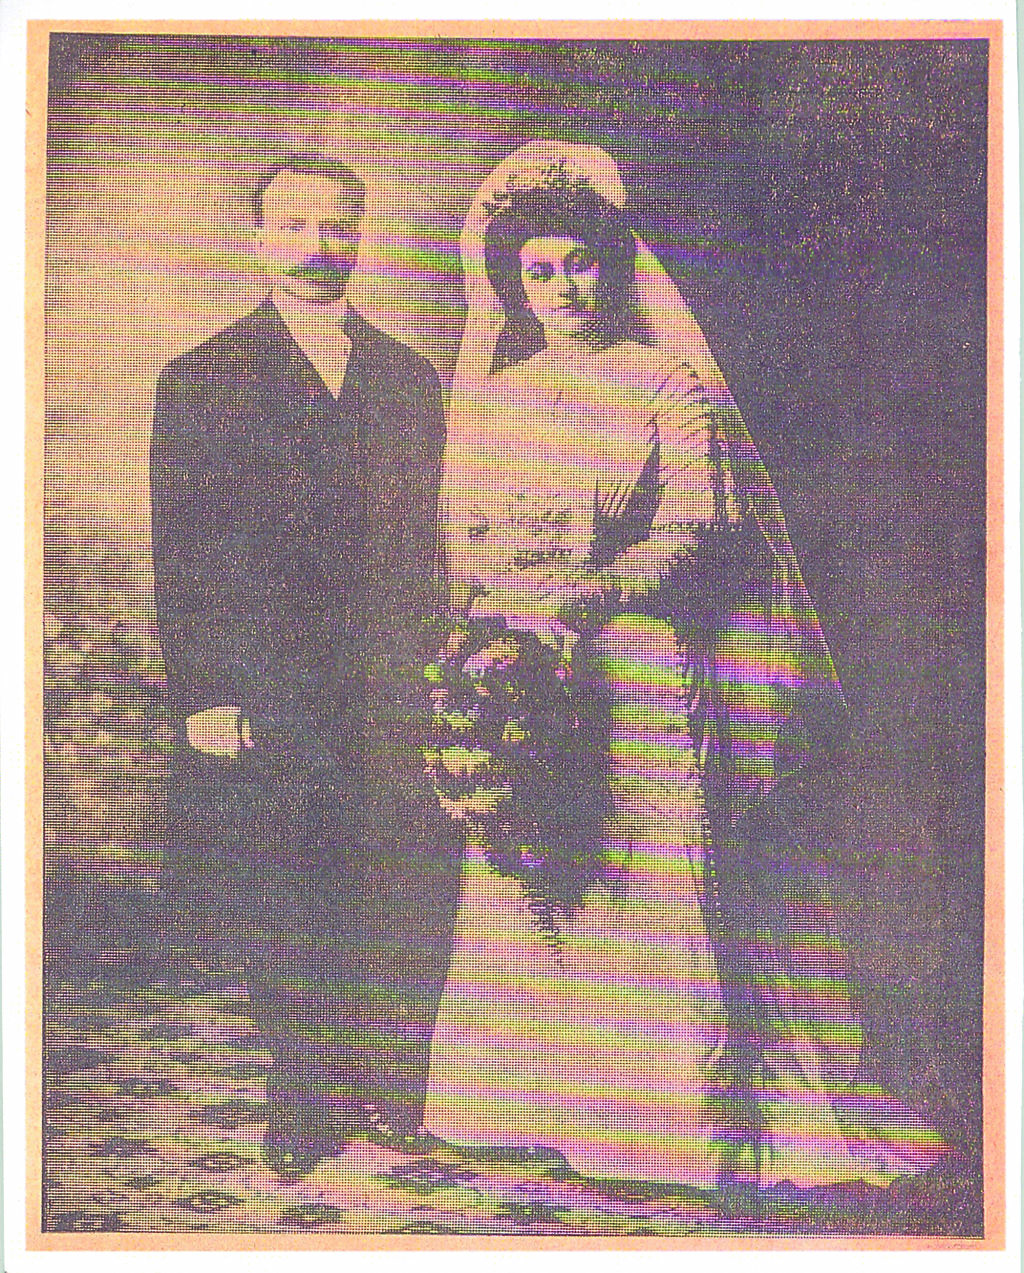 DON FRANCISCO JAVIER LOZANO GONZÁLEZ EL DÍA DE SU MATRIMONIO CON LA SRITA. OLIVA GARZA DE LOZANO, 9 de diciembre de 1908, en Brownsville, Texas, USA, tierra natal de la novia.